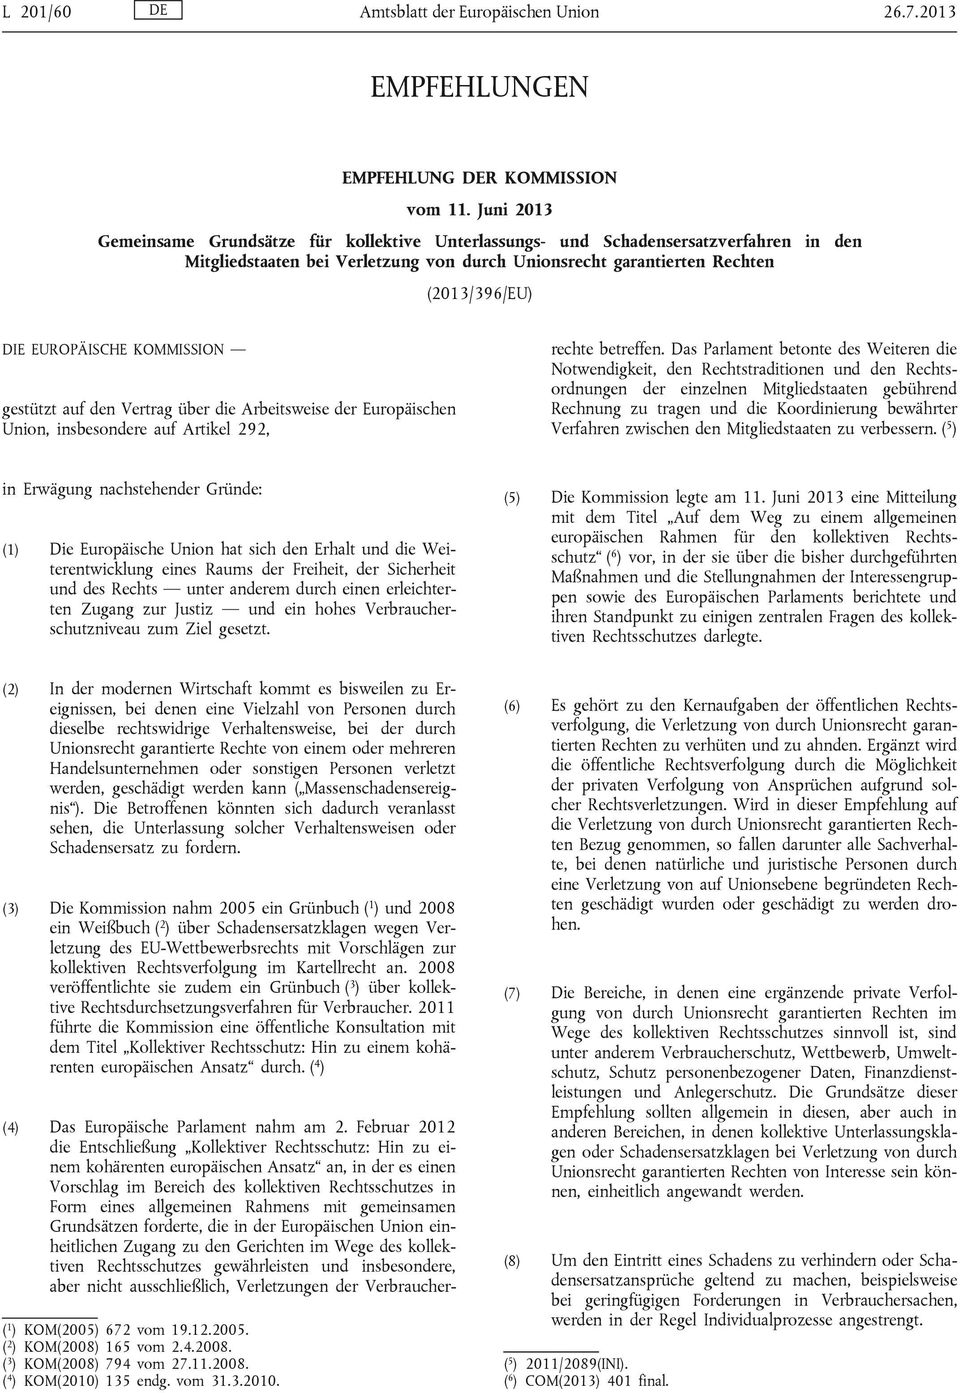 EUROPÄISCHE KOMMISSION gestützt auf den Vertrag über die Arbeitsweise der Europäischen Union, insbesondere auf Artikel 292, (4) Das Europäische Parlament nahm am 2.